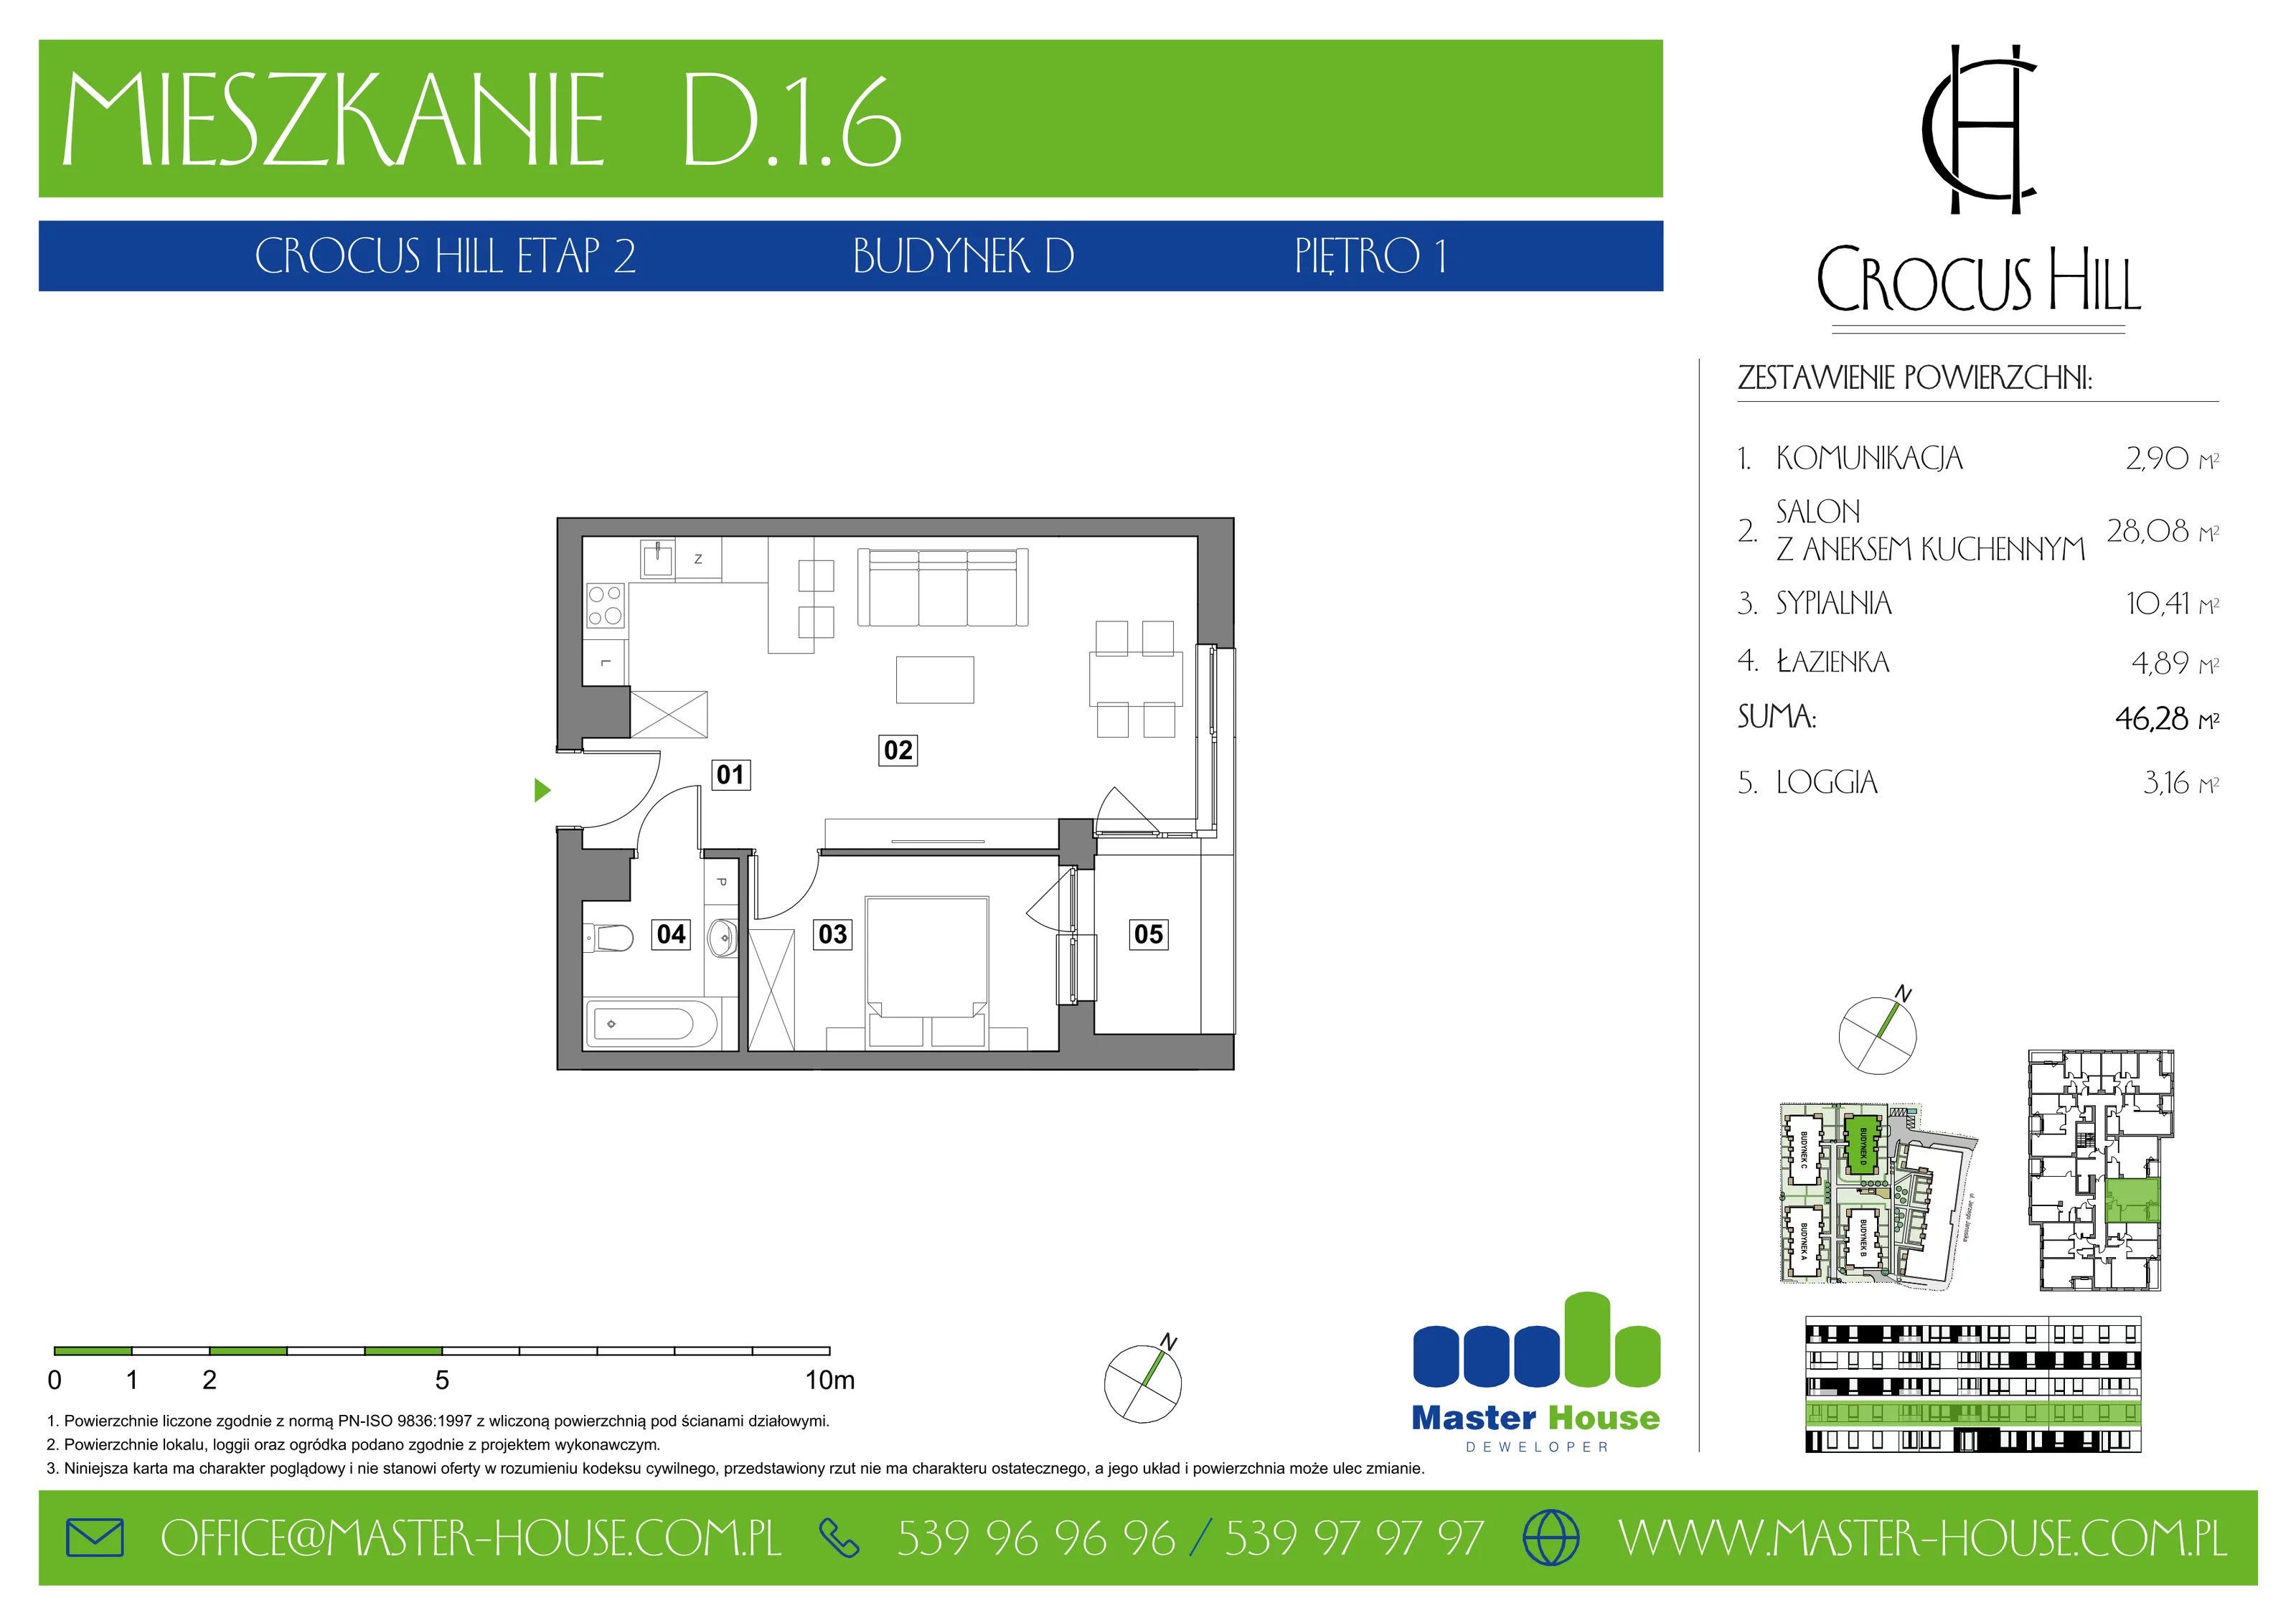 Mieszkanie 46,28 m², piętro 1, oferta nr D.1.6, Crocus Hill, Szczecin, Śródmieście, ul. Jerzego Janosika 2, 2A, 3, 3A